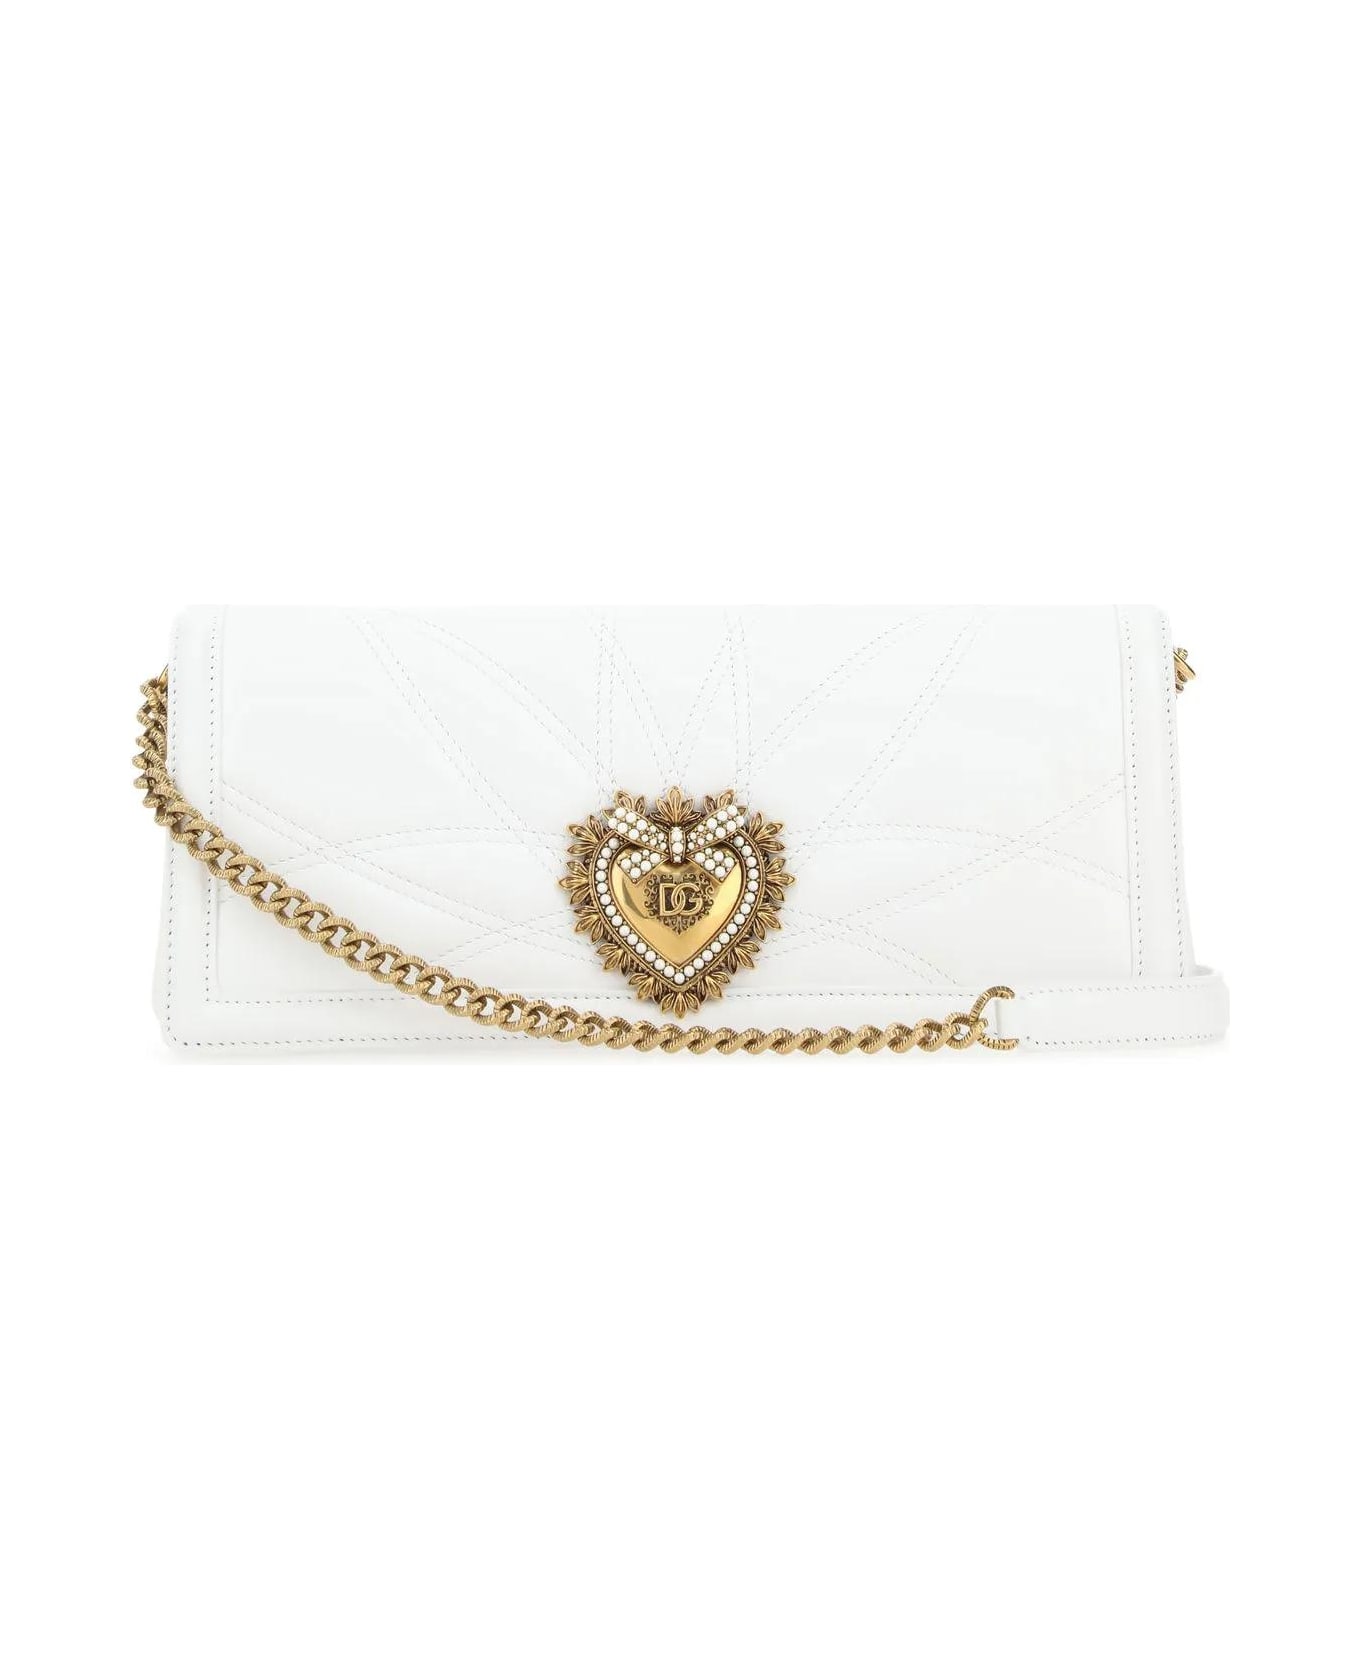 Dolce & Gabbana White Nappa Leather Devotion Shoulder Bag - White